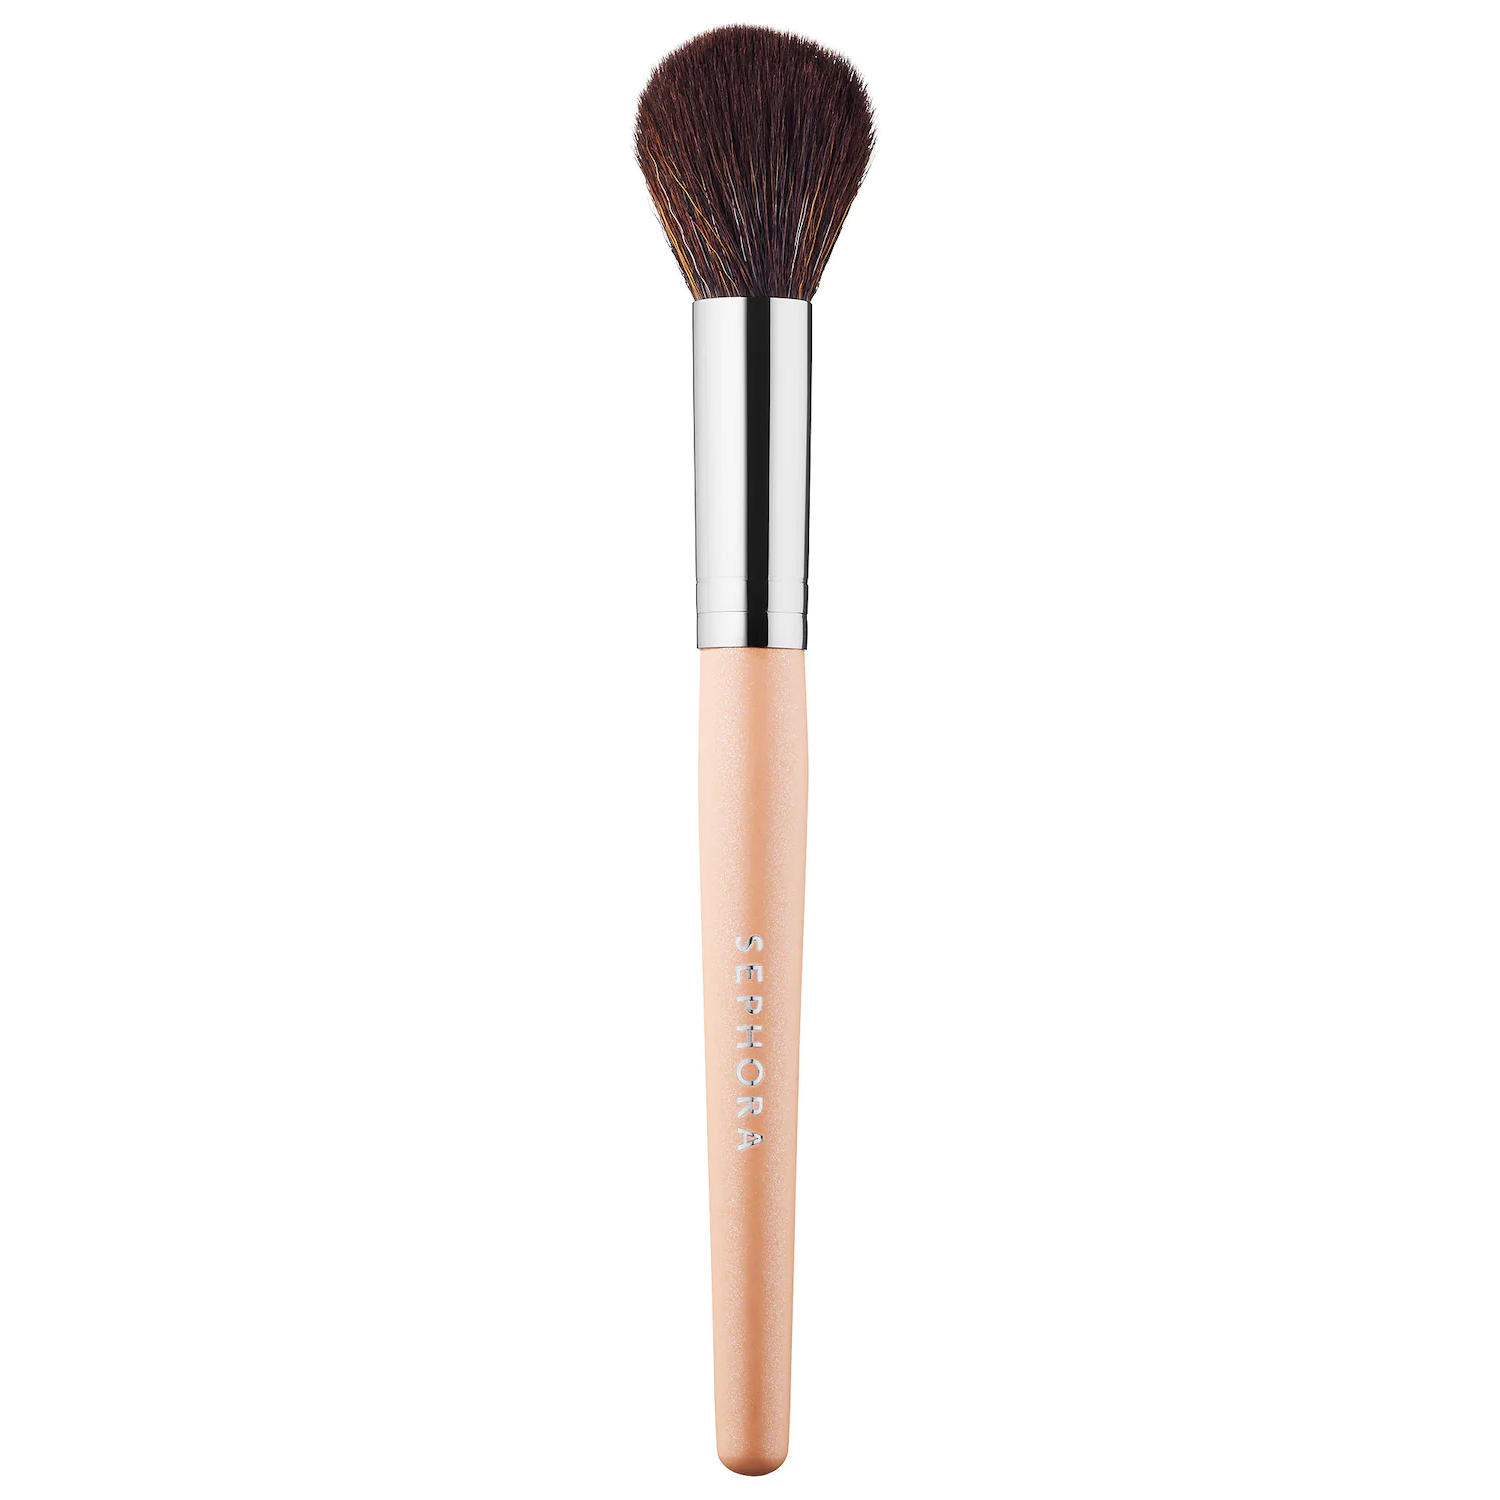 Sephora Makeup Match Highlight Brush | Glambot.com - Best deals on ...